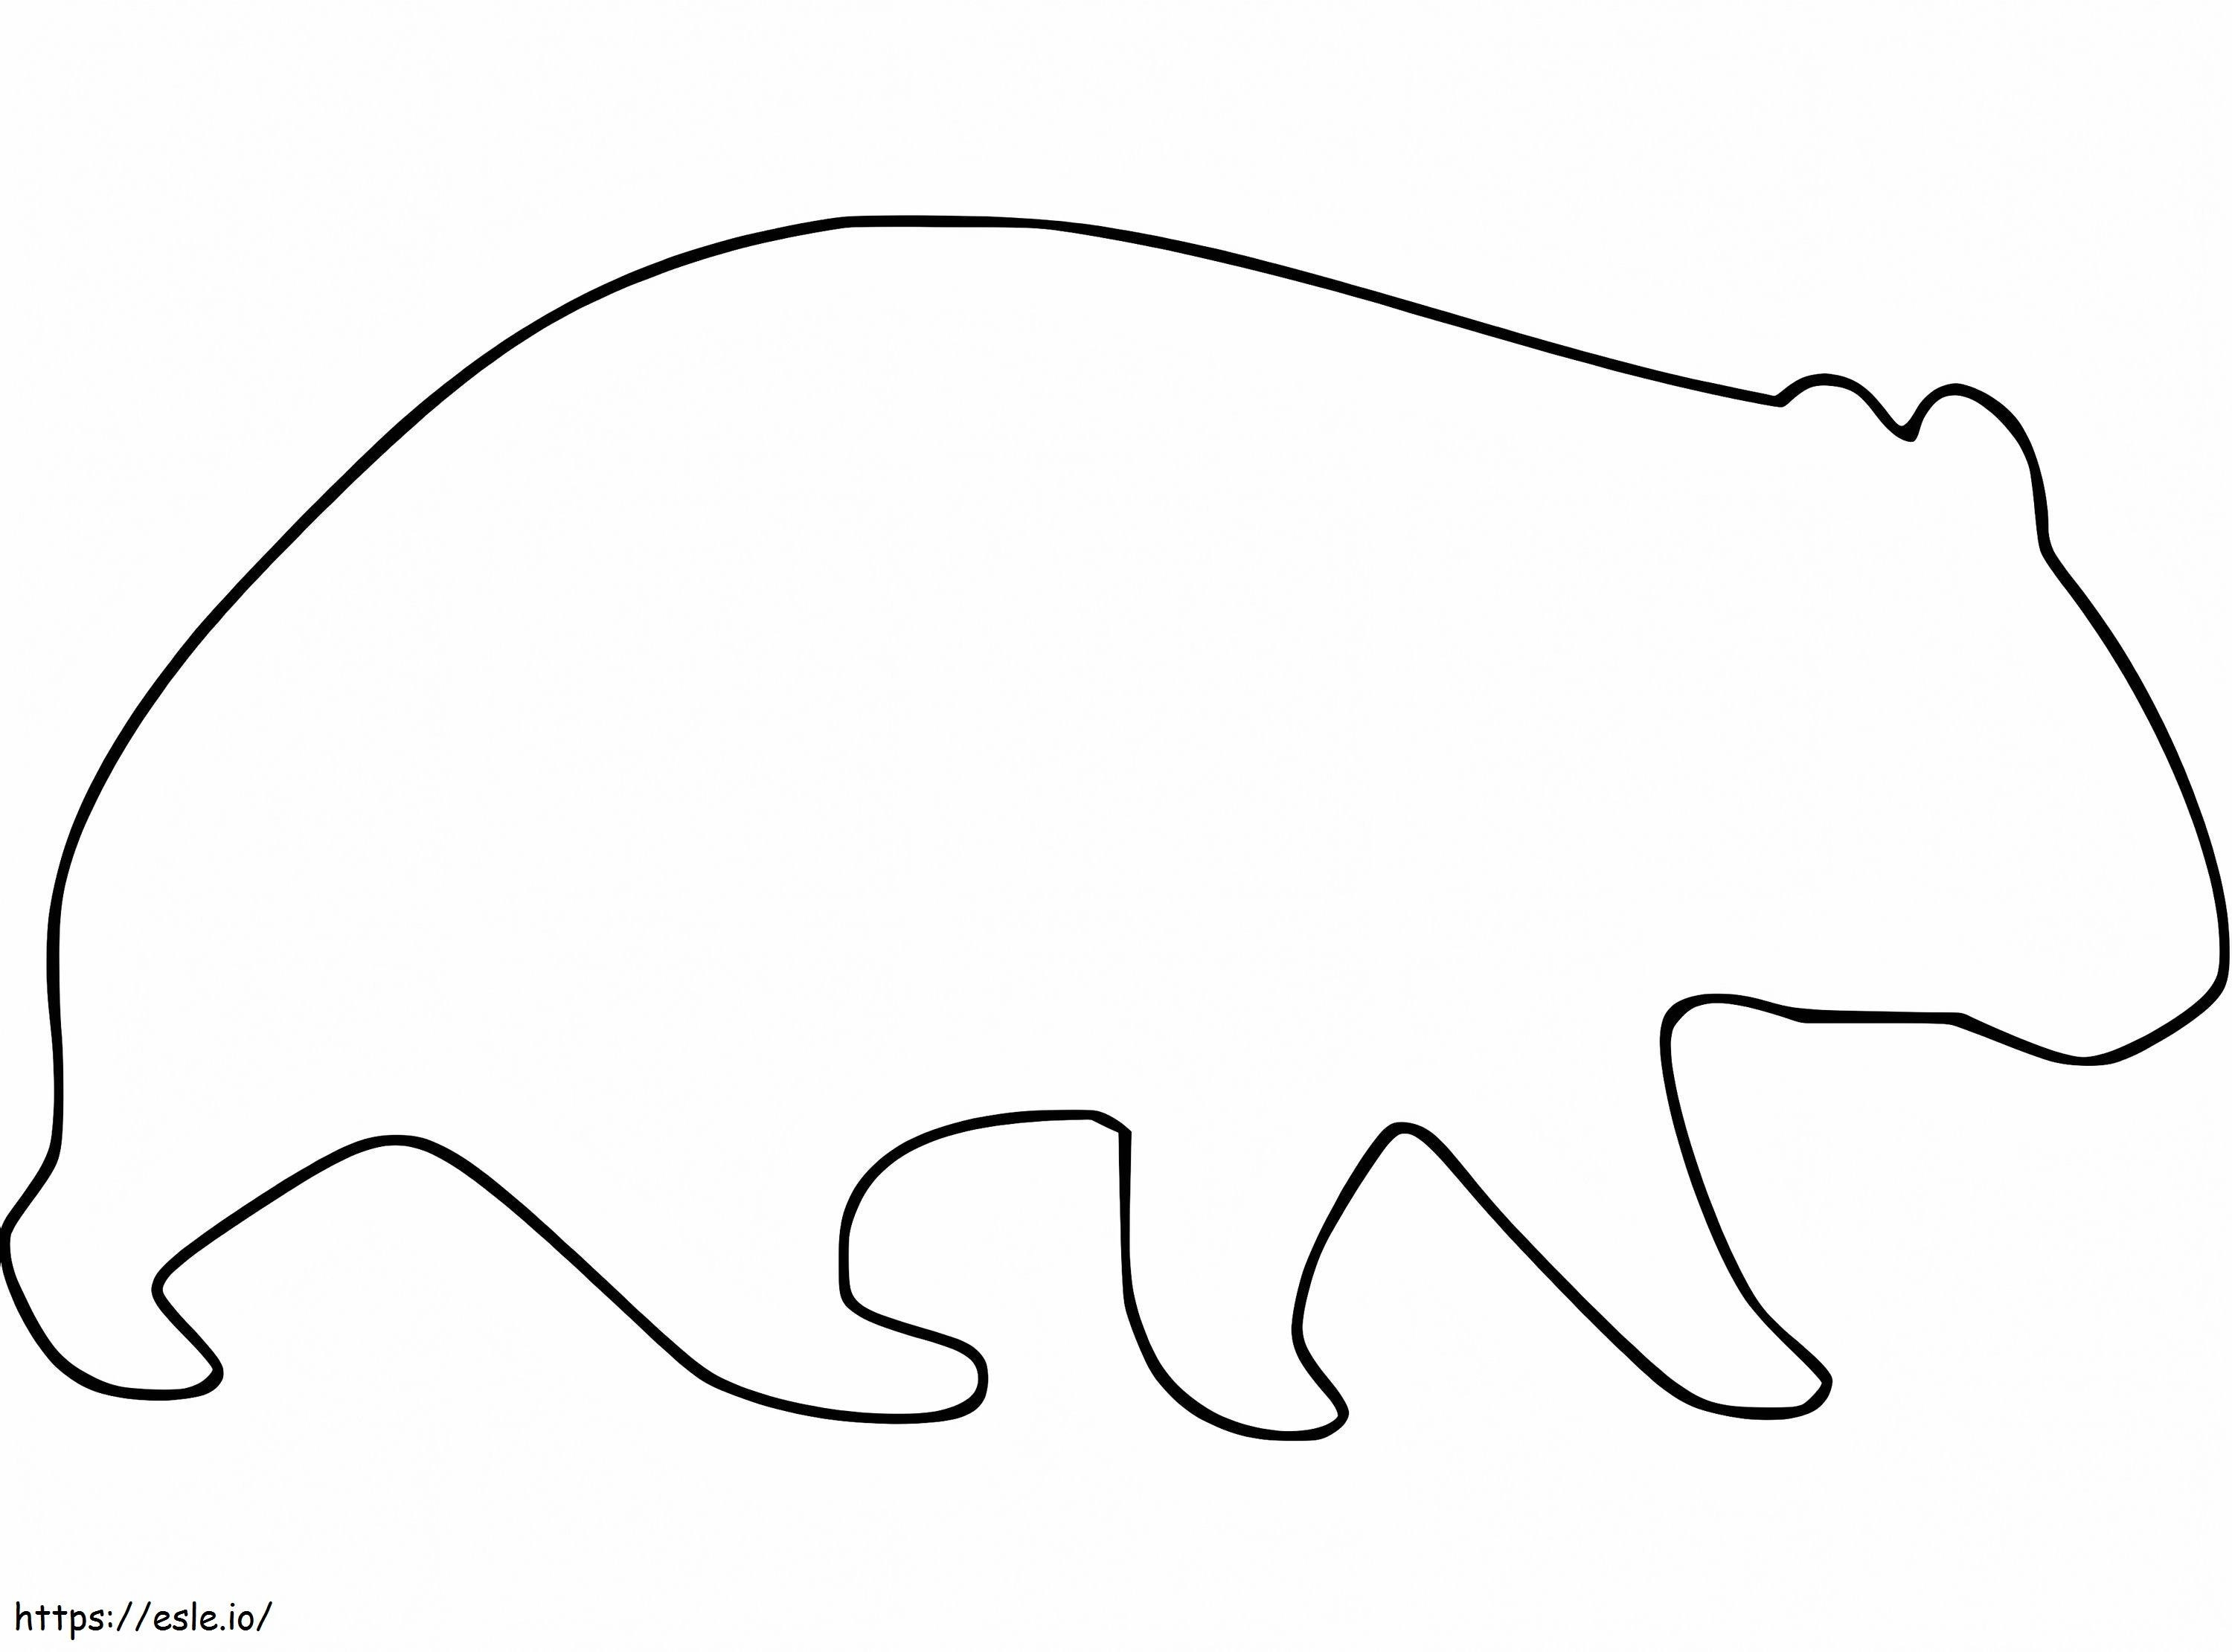 Zarys wombata kolorowanka